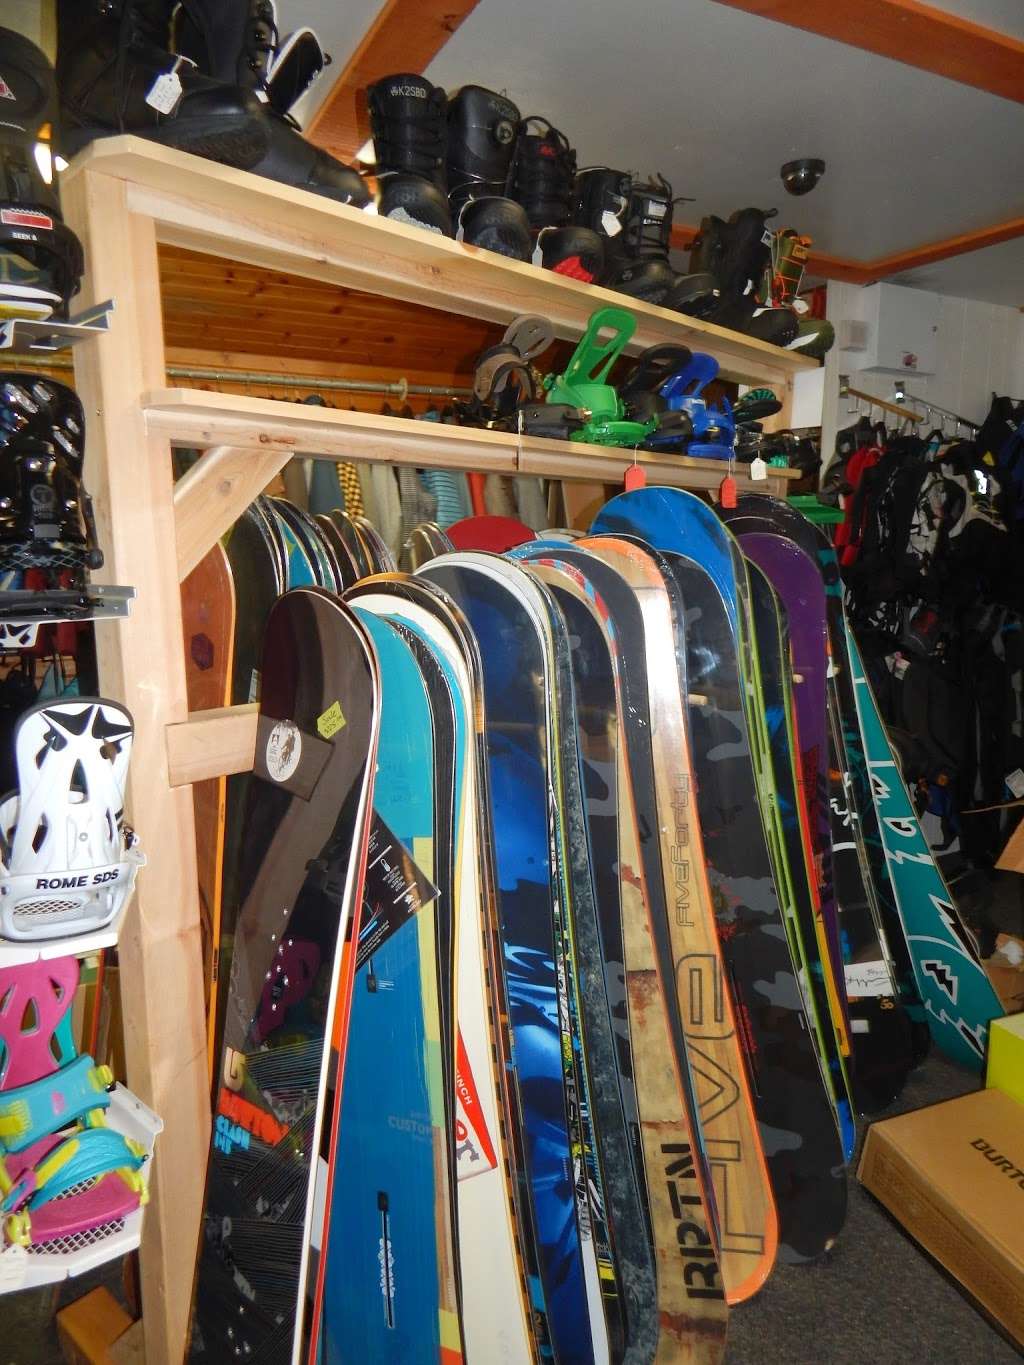 Cabin Craft Snowboard & Ski Shop | 2 Main St, Spring Mt, PA 19478 | Phone: (610) 287-7064